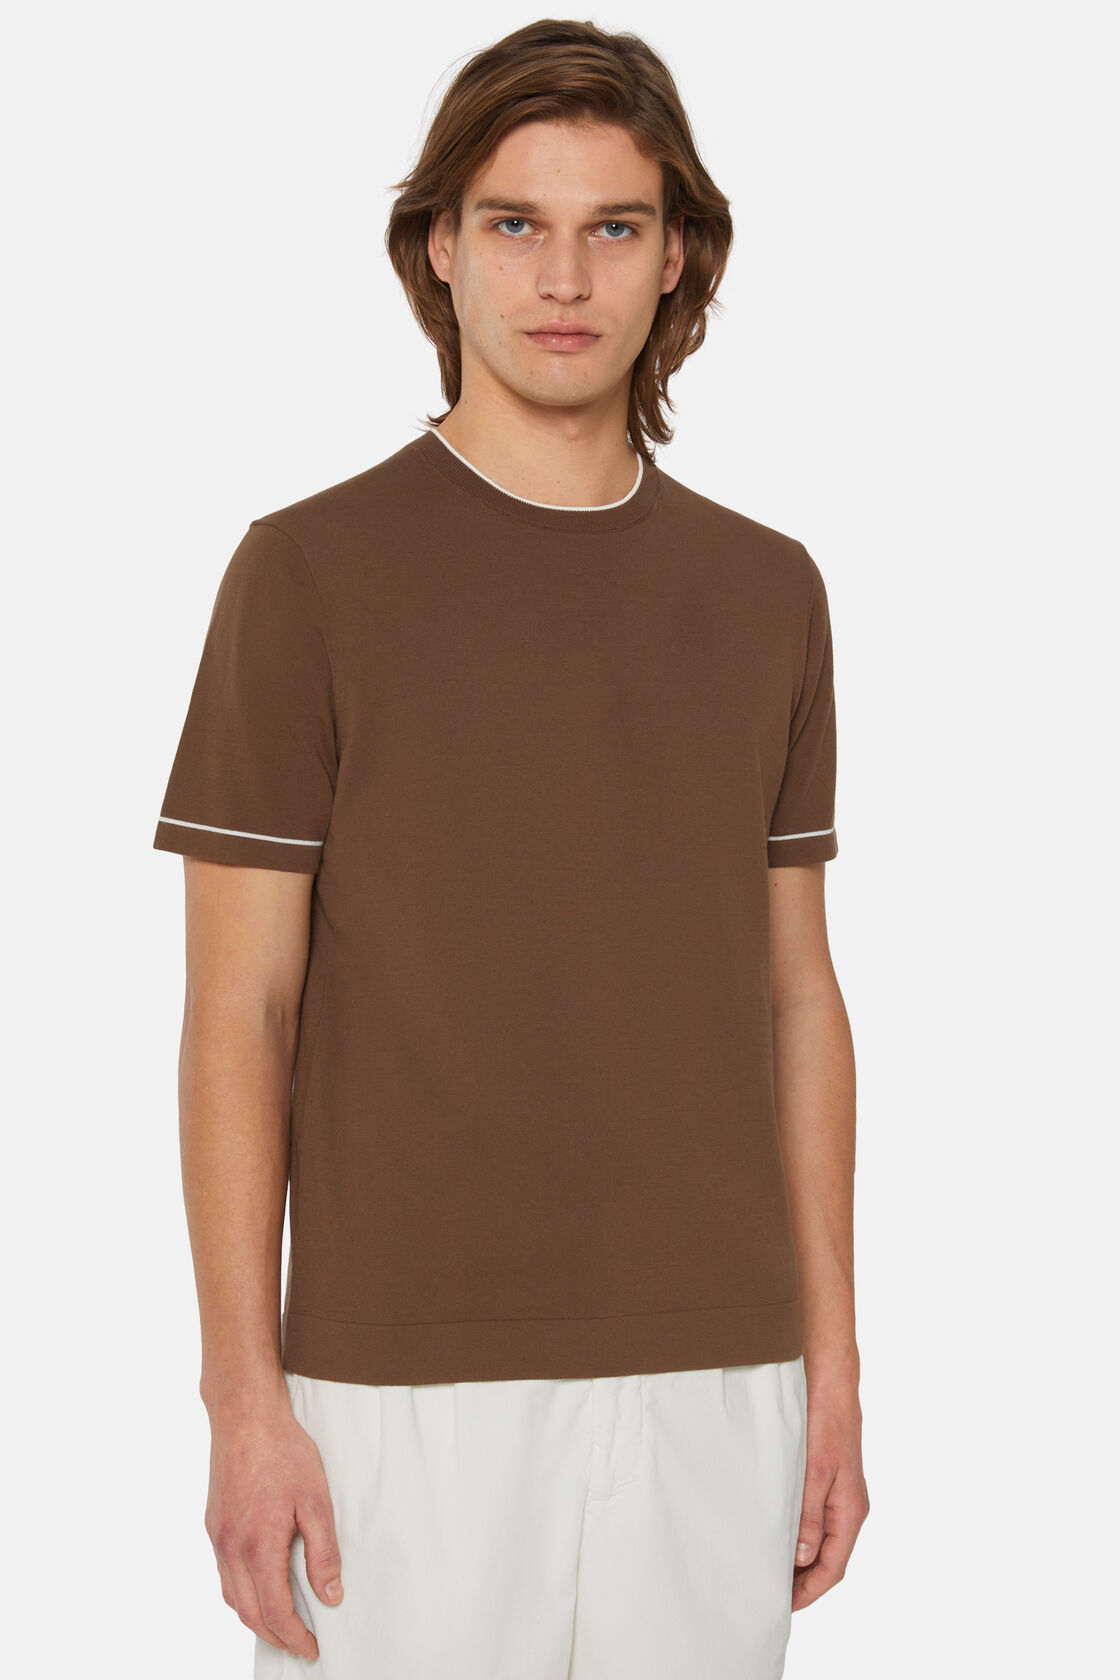 T-shirt em malha de algodão crepado castanha, Brown, hi-res